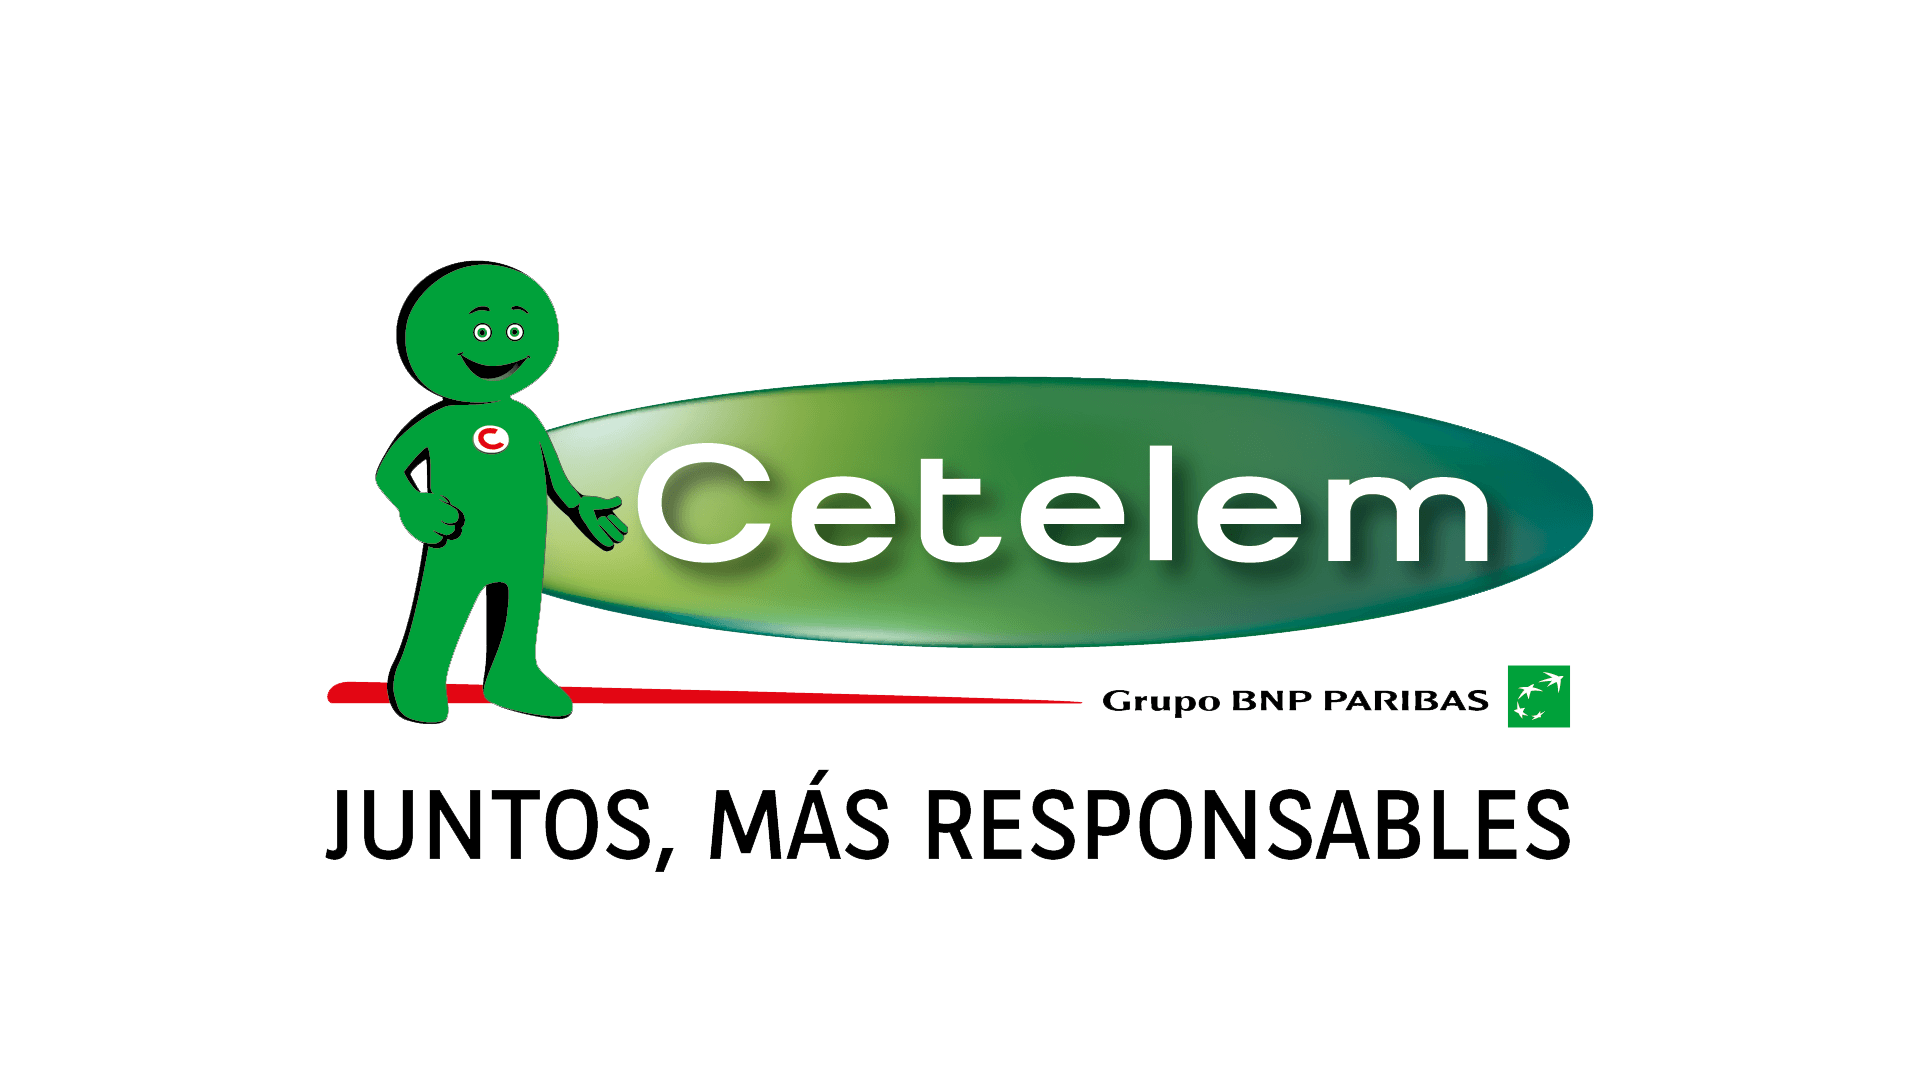 cetelem-logo-con-slogan